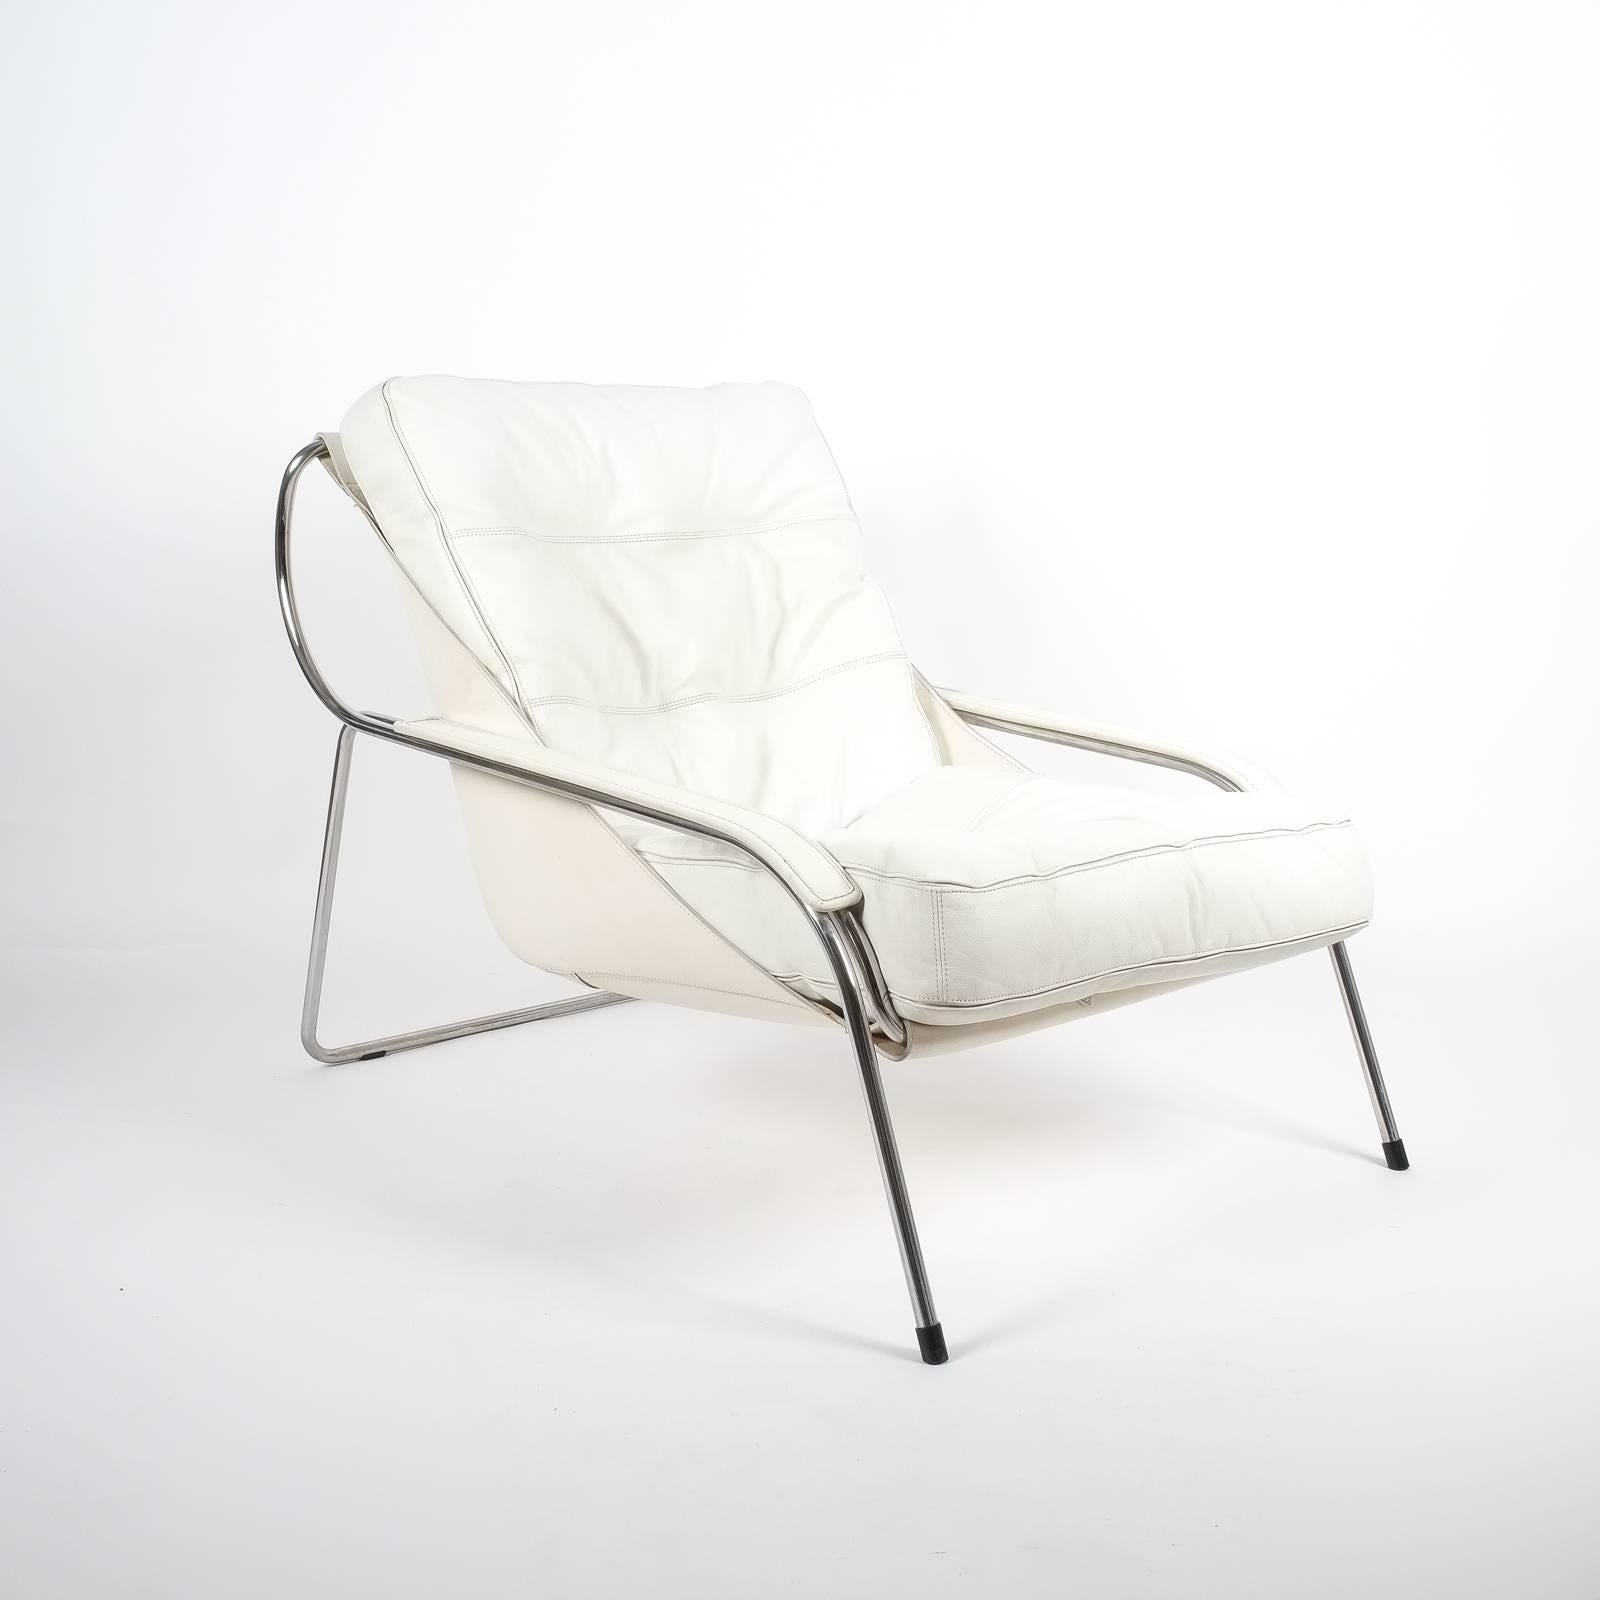 Eleganter Stuhl Maggiolina von Zanotta, entworfen von Marco Zanuso, ursprünglich aus dem Jahr 1947. Der Sling aus Rindsleder trägt ein großes Kissen aus Nappaleder. Ein Gestell aus rostfreiem Stahl trägt diesen sehr bequemen und eleganten